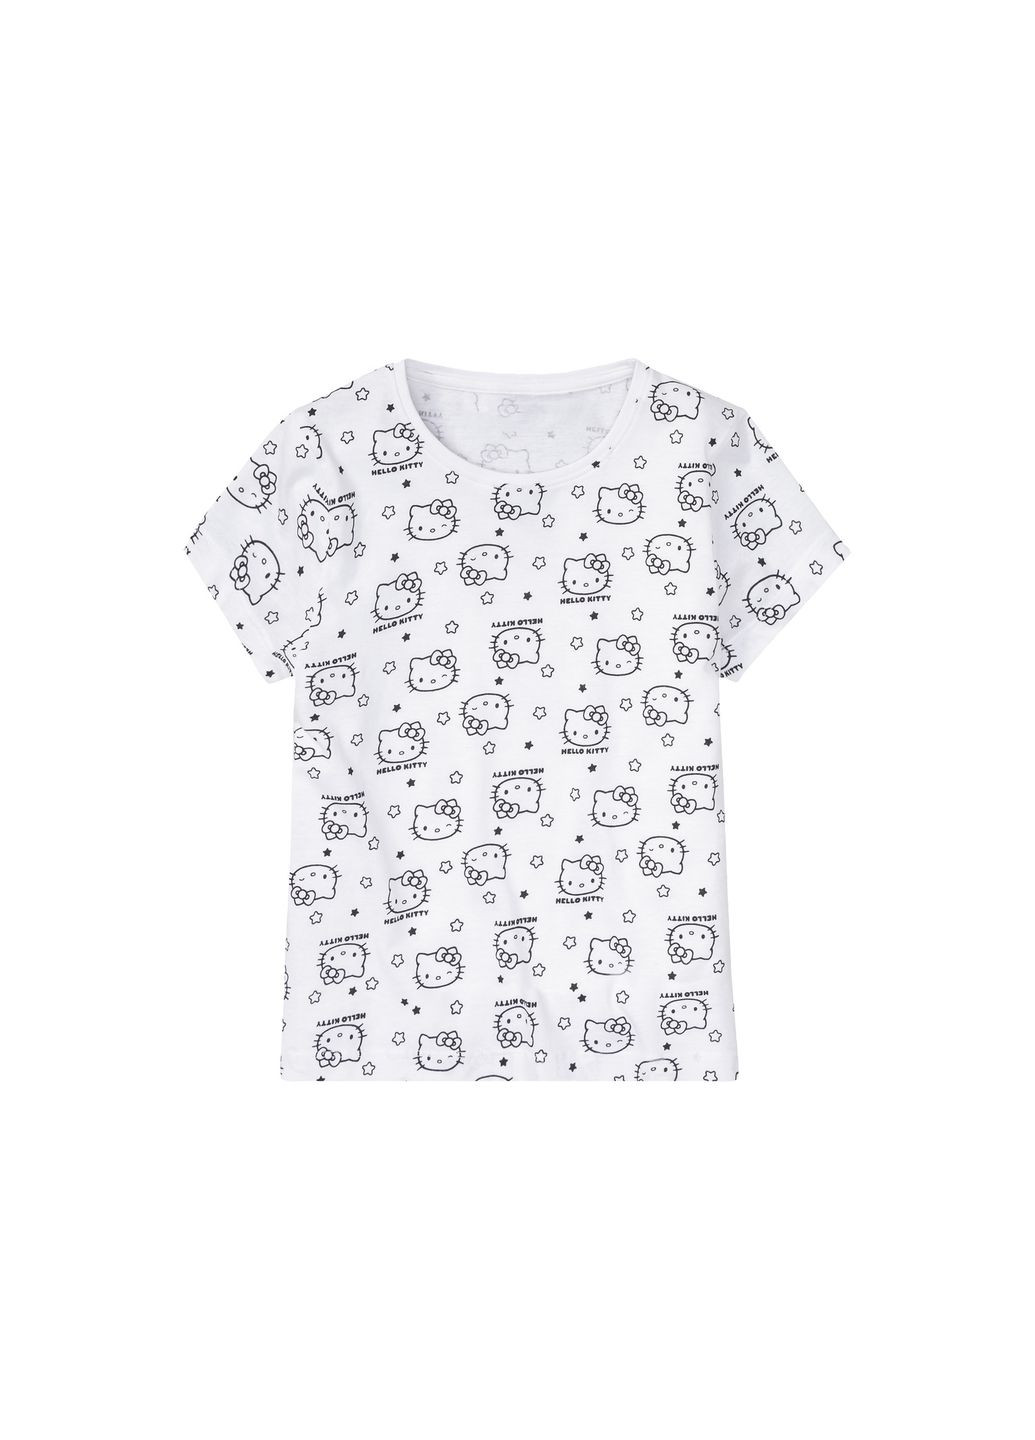 Черно-белая пижама (футболка и шорты) для девочки hello kitty 406150 черный, белый Disney